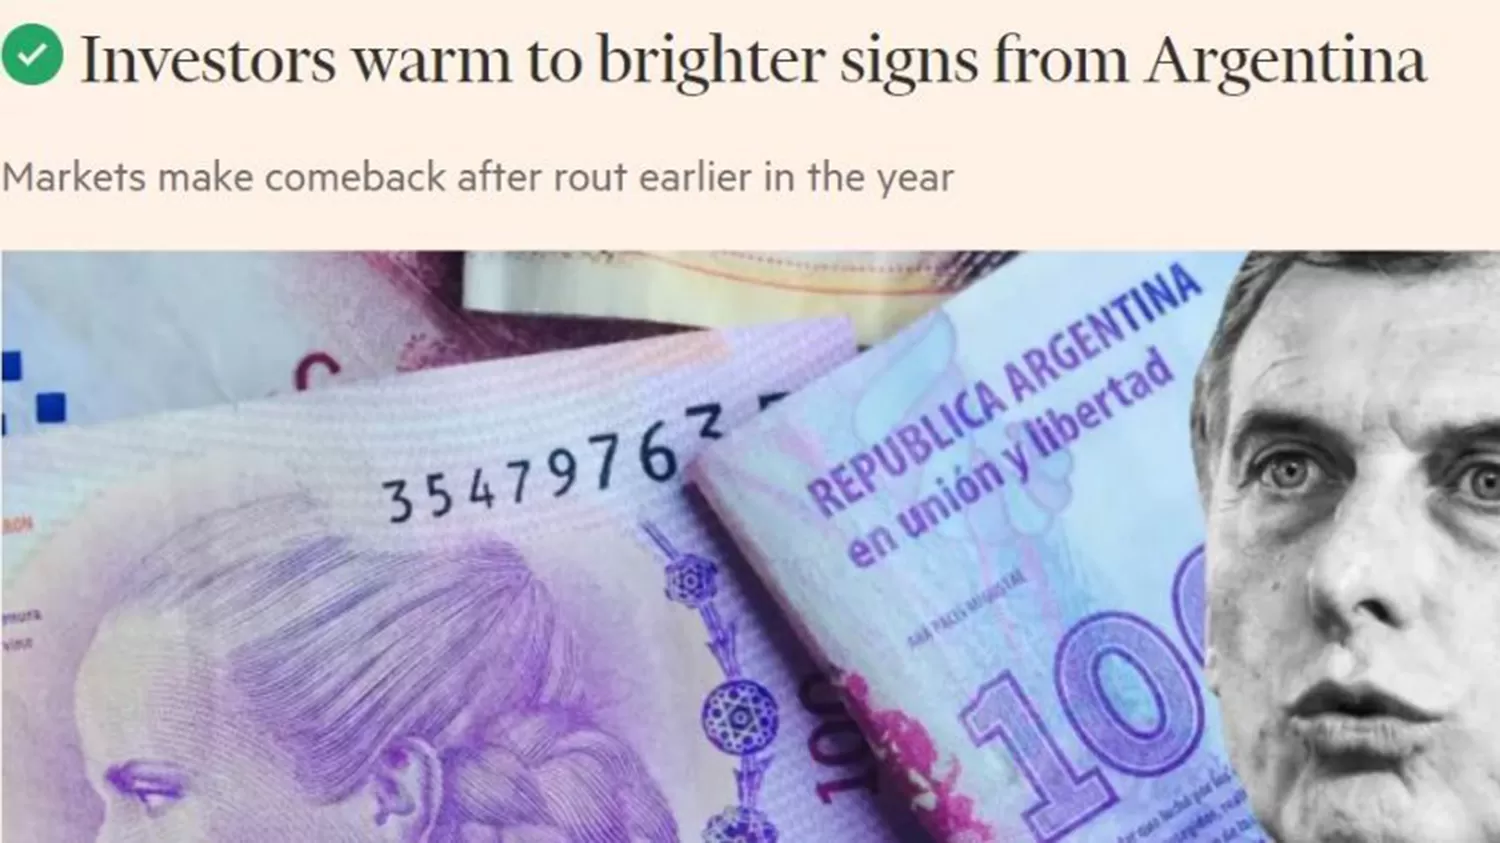 Los inversores recuperaron el entusiasmo por la Argentina, según The Financial Times